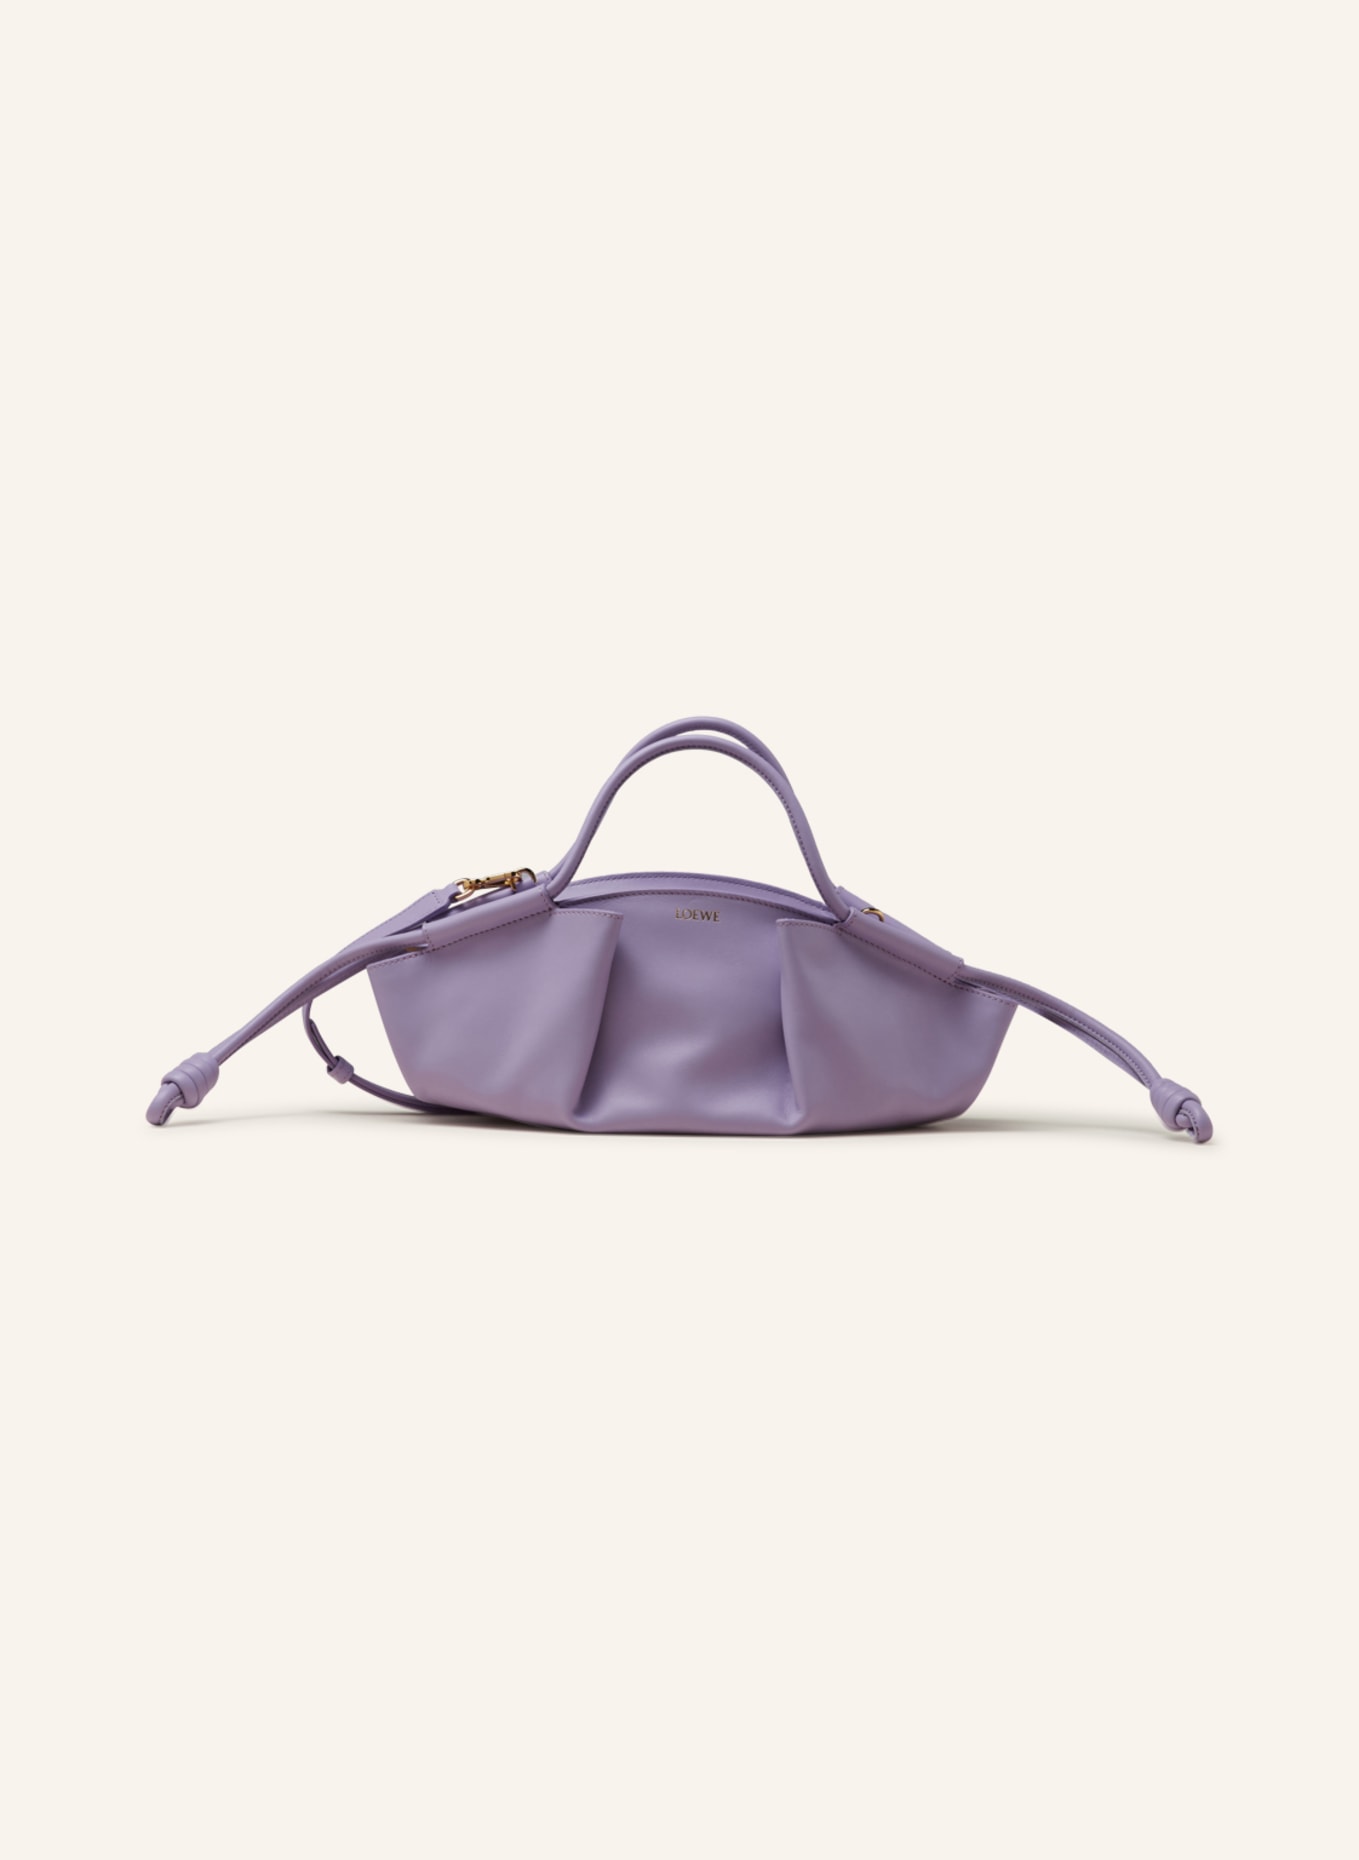 LOEWE Handbag PASEO SMALL, Color: LIGHT PURPLE (Image 1)